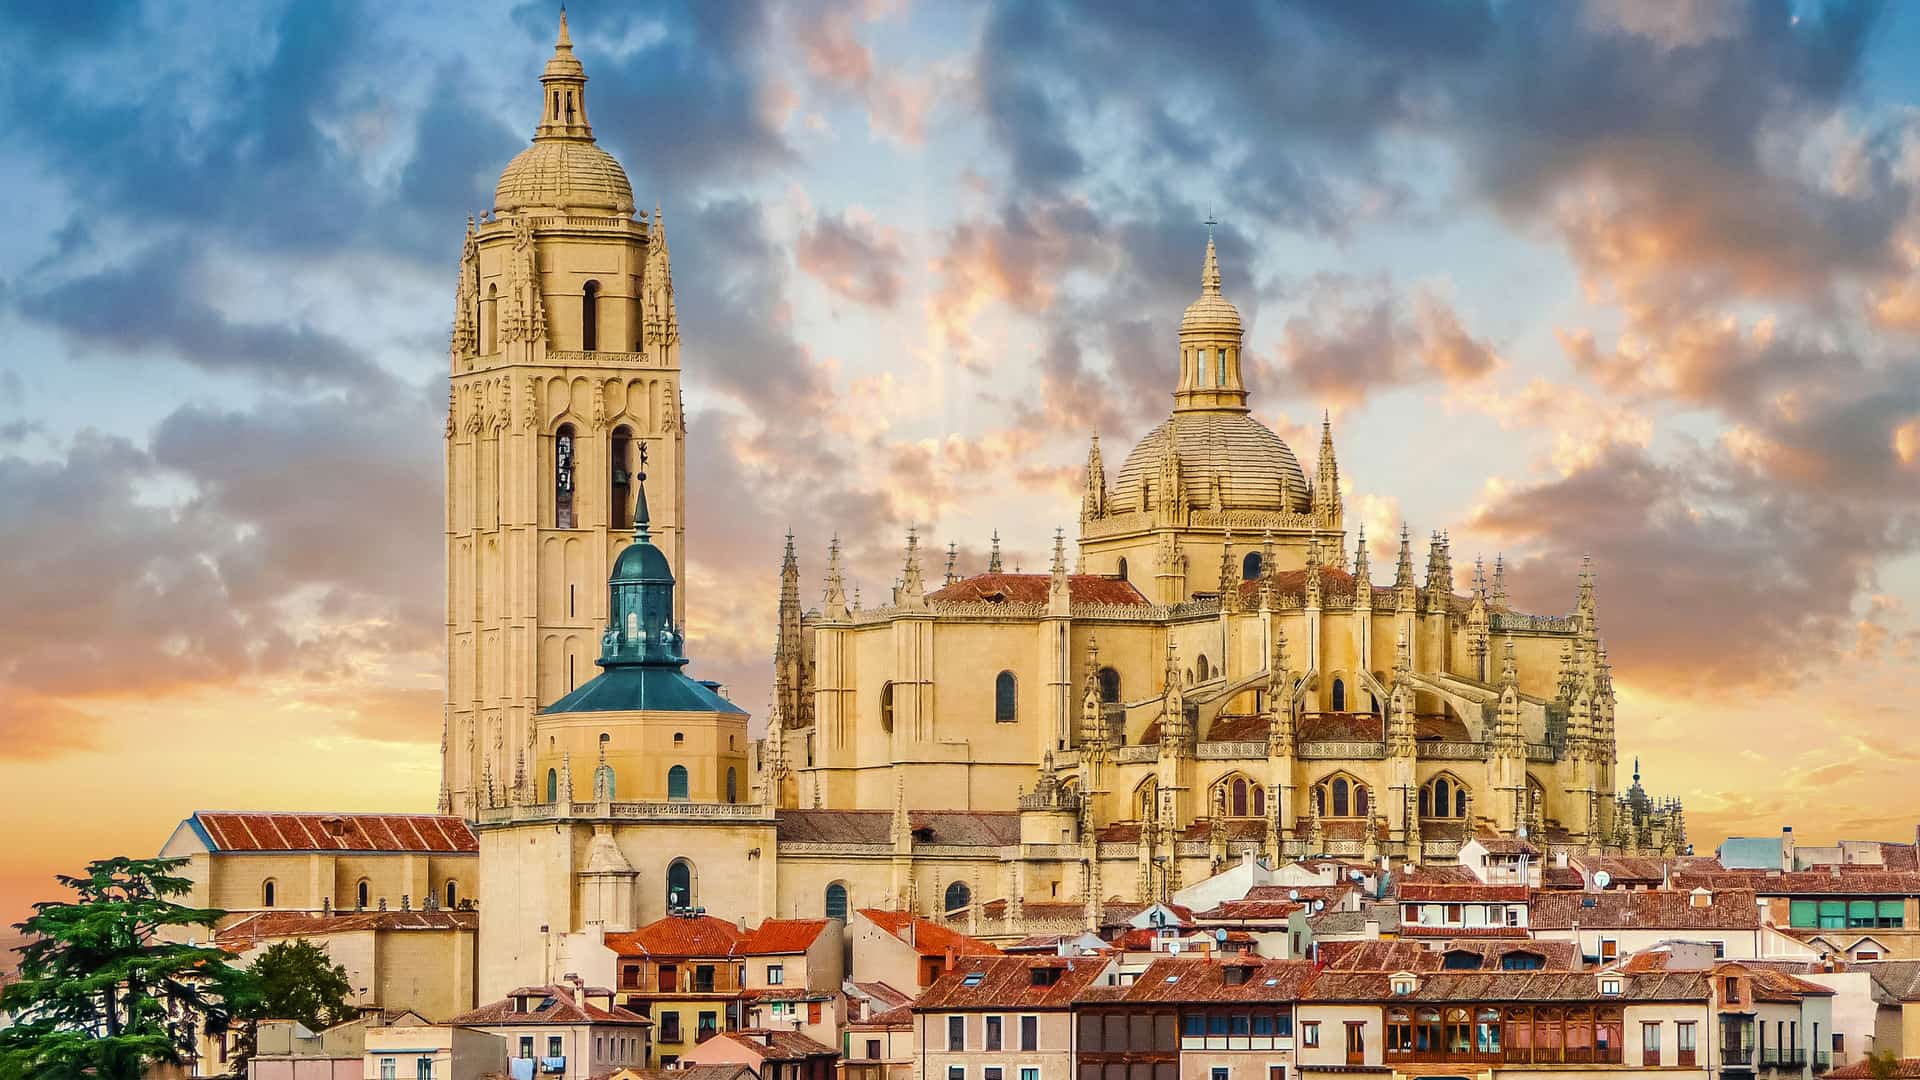 Catedral de Santa maría de Segovia donde están disponibles los servicios telefónicos de yoigo